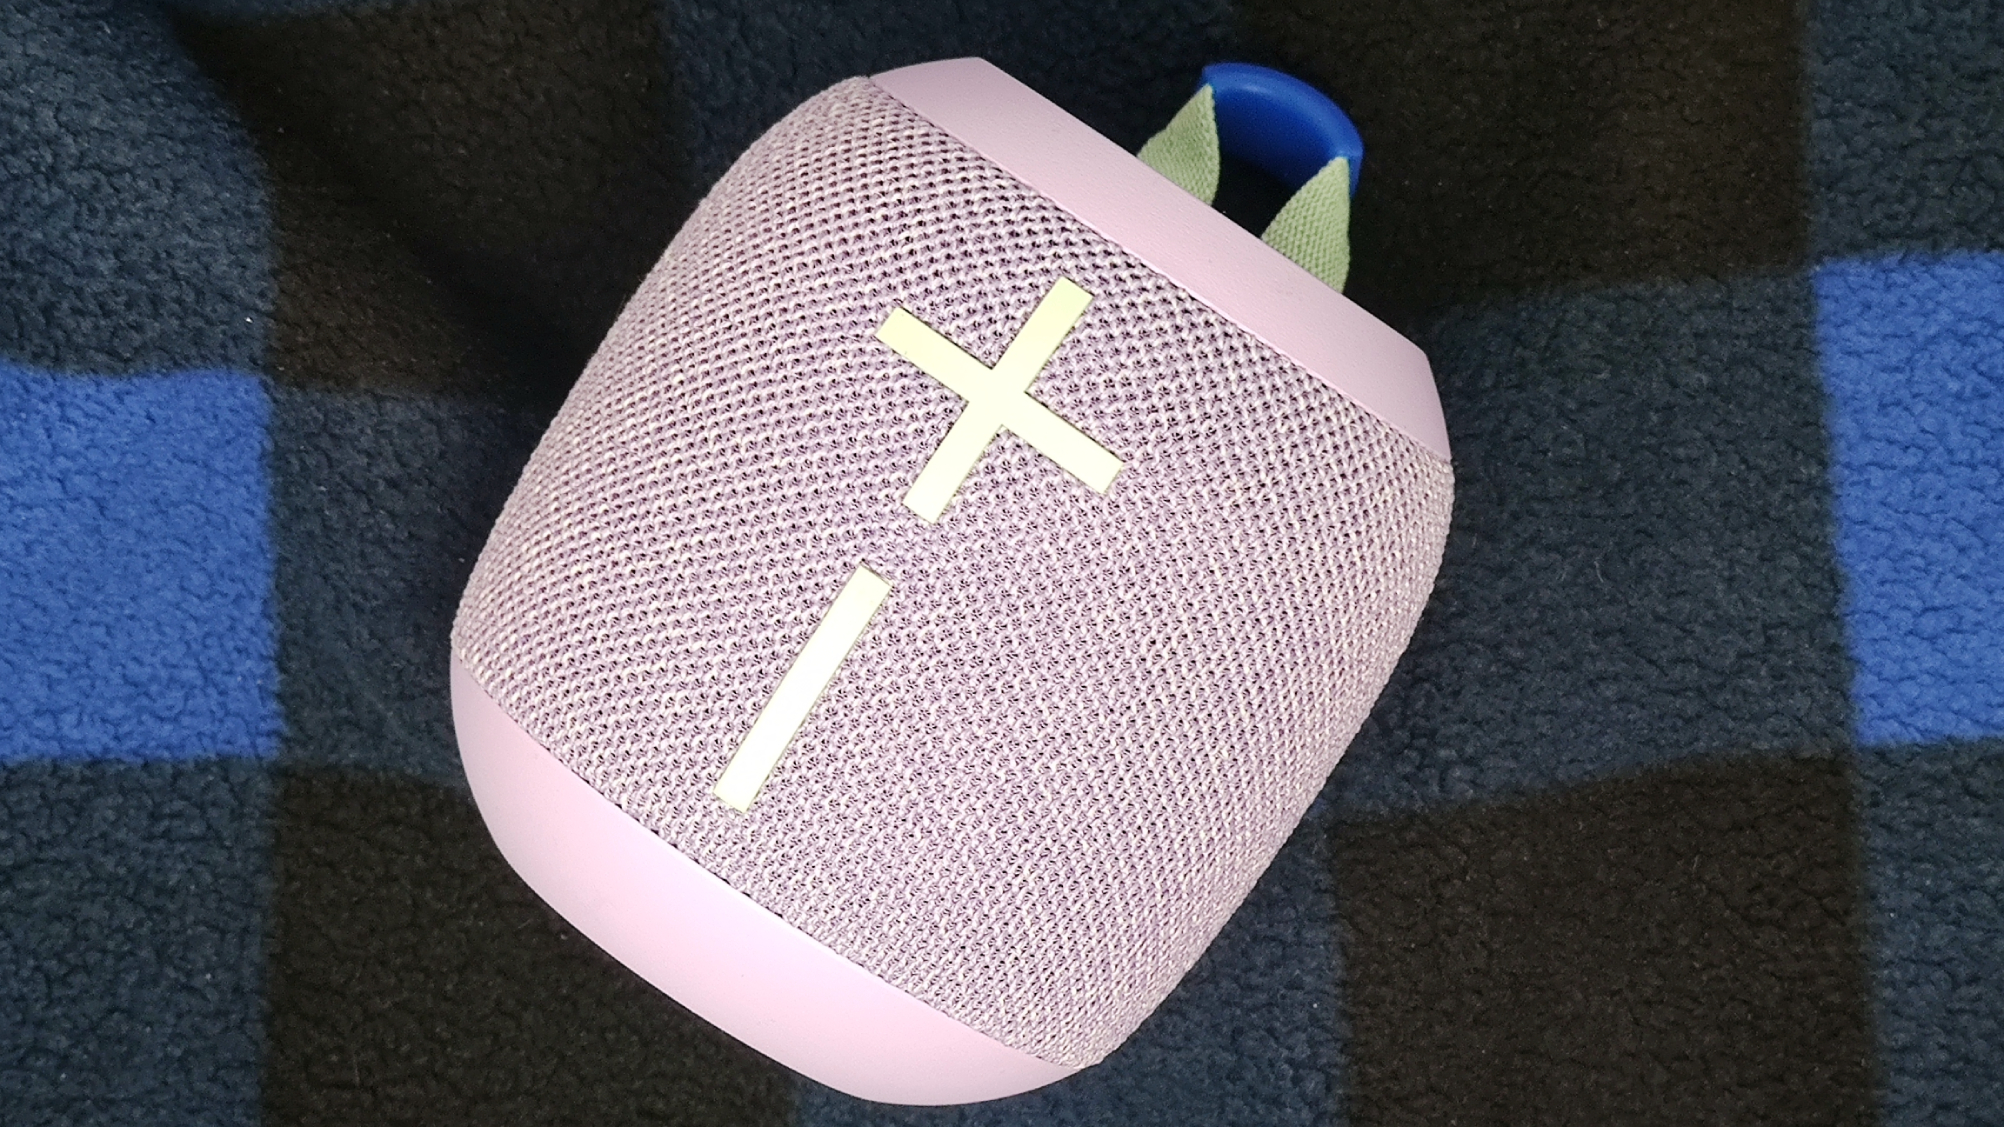 Buy the Ultimate Ears WONDERBOOM 3 Portable Bluetooth Speaker